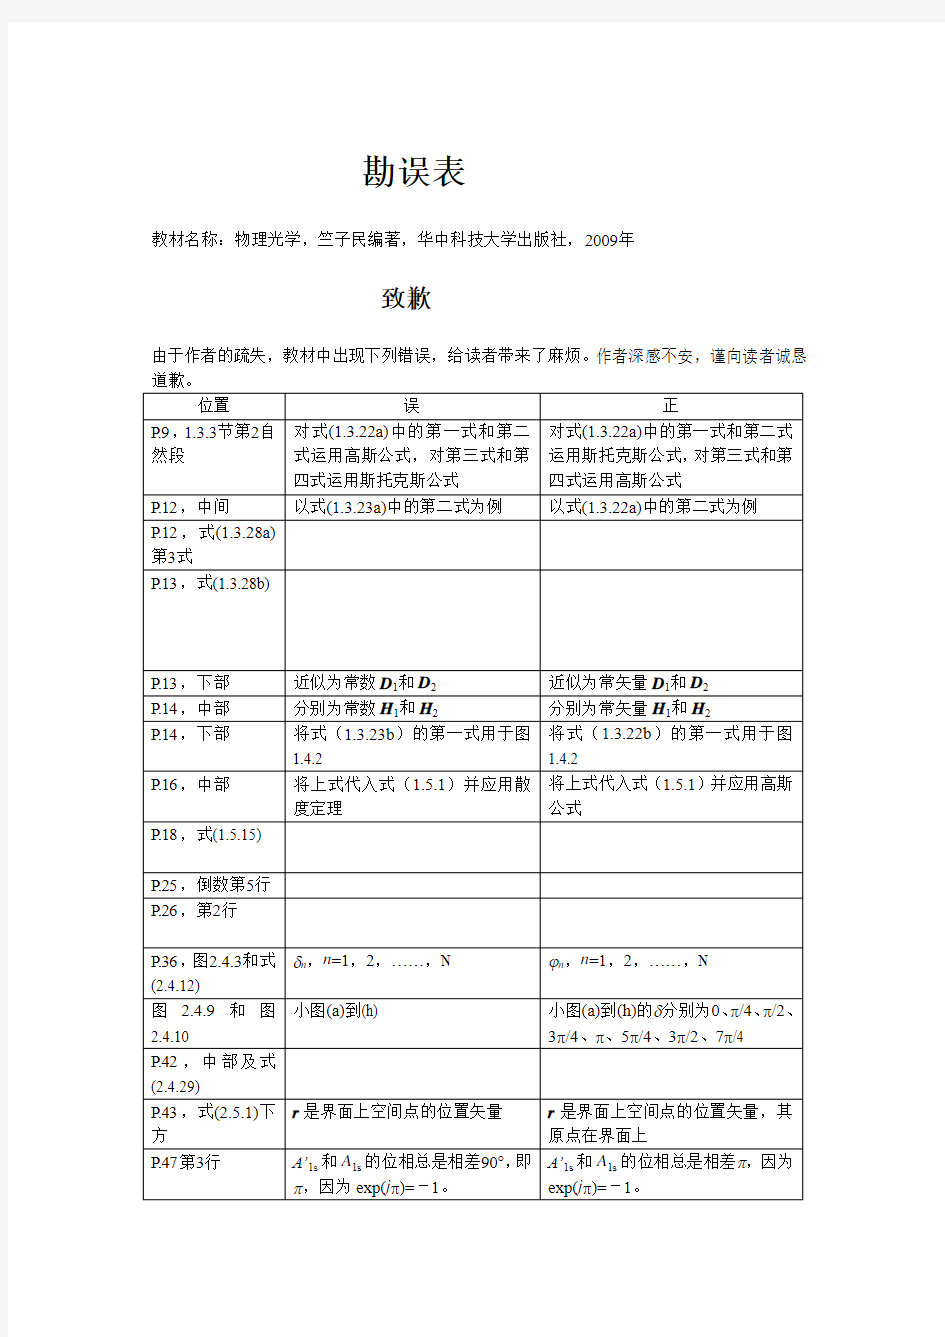 物理光学,竺子民编著,华中科技大学出版社,2009年  勘误表